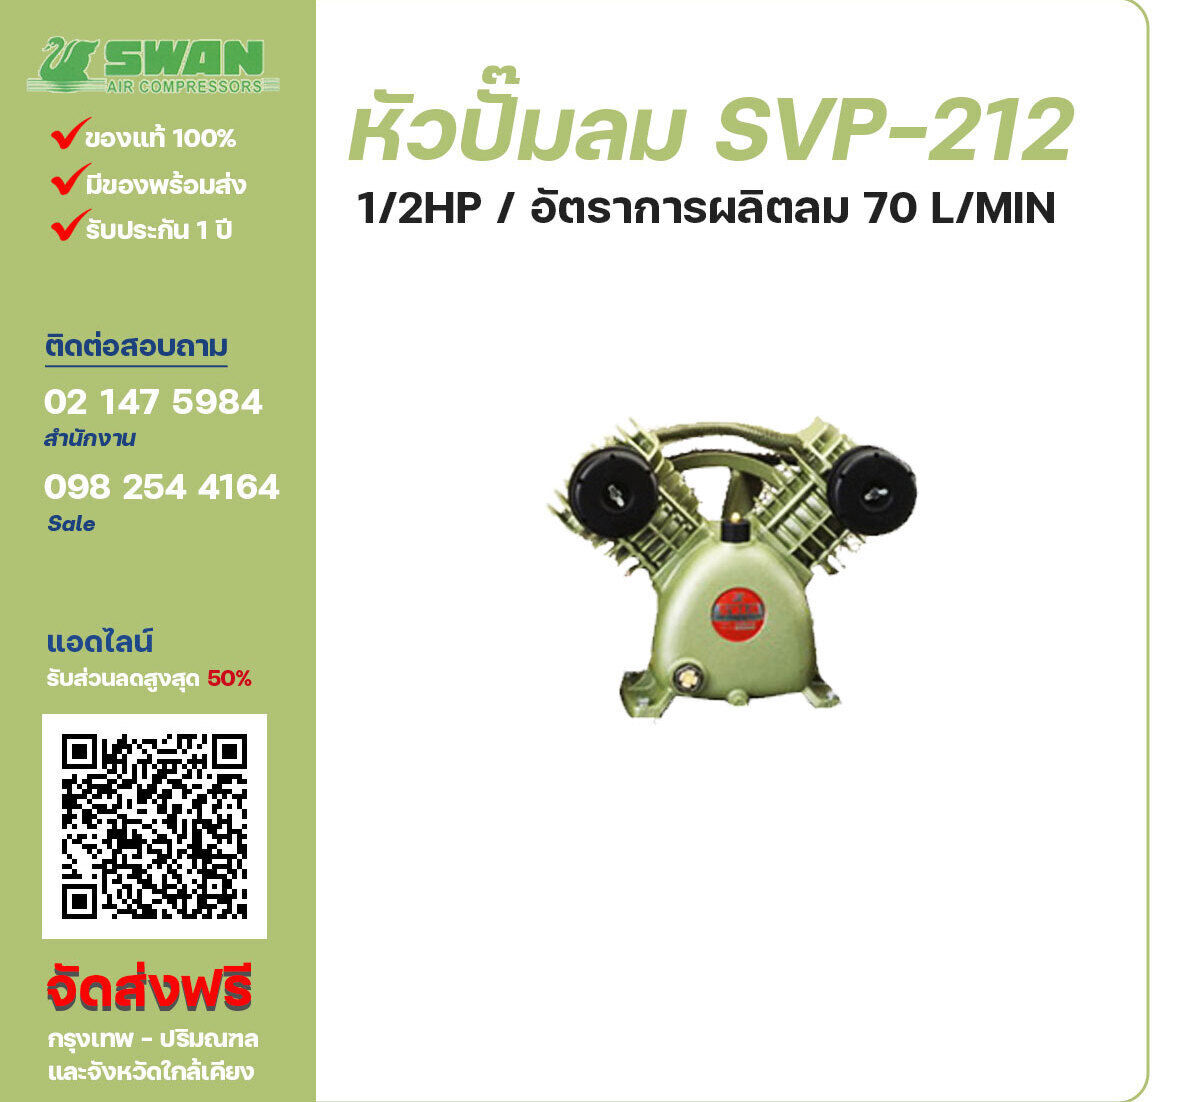 จำหน่ายหัวปั๊มลมสวอน ของแท้ 100% SWAN Bare Compressor รุ่น  SVP-212 ขนาด 1/2 แรงม้า อัตราการผลิตลม 70 ลิตร / นาที รับประกัน 3 เดือน ตามเงื่อนไขของบริษัทฯ จัดส่งฟรี กรุงเทพ-ปริมณฑล